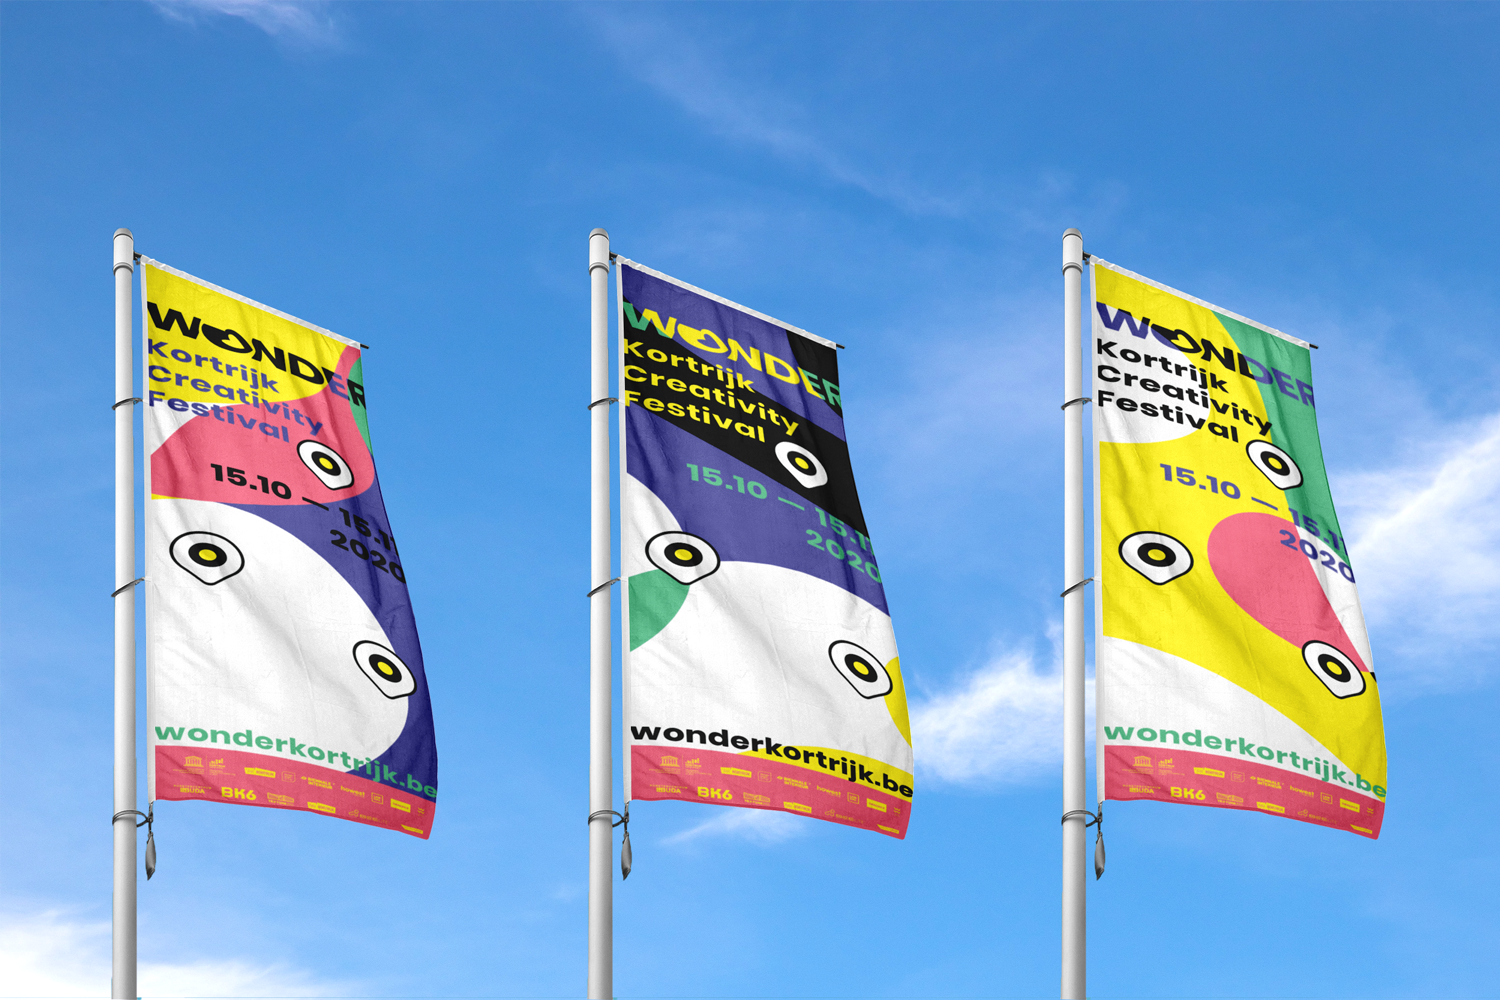 Wonder-Kortrijk-Creativity-Festival-identity-branding-Designregio-Kortrijk-Artist-Proof-Studio-Thomas-De-Ben-9.png